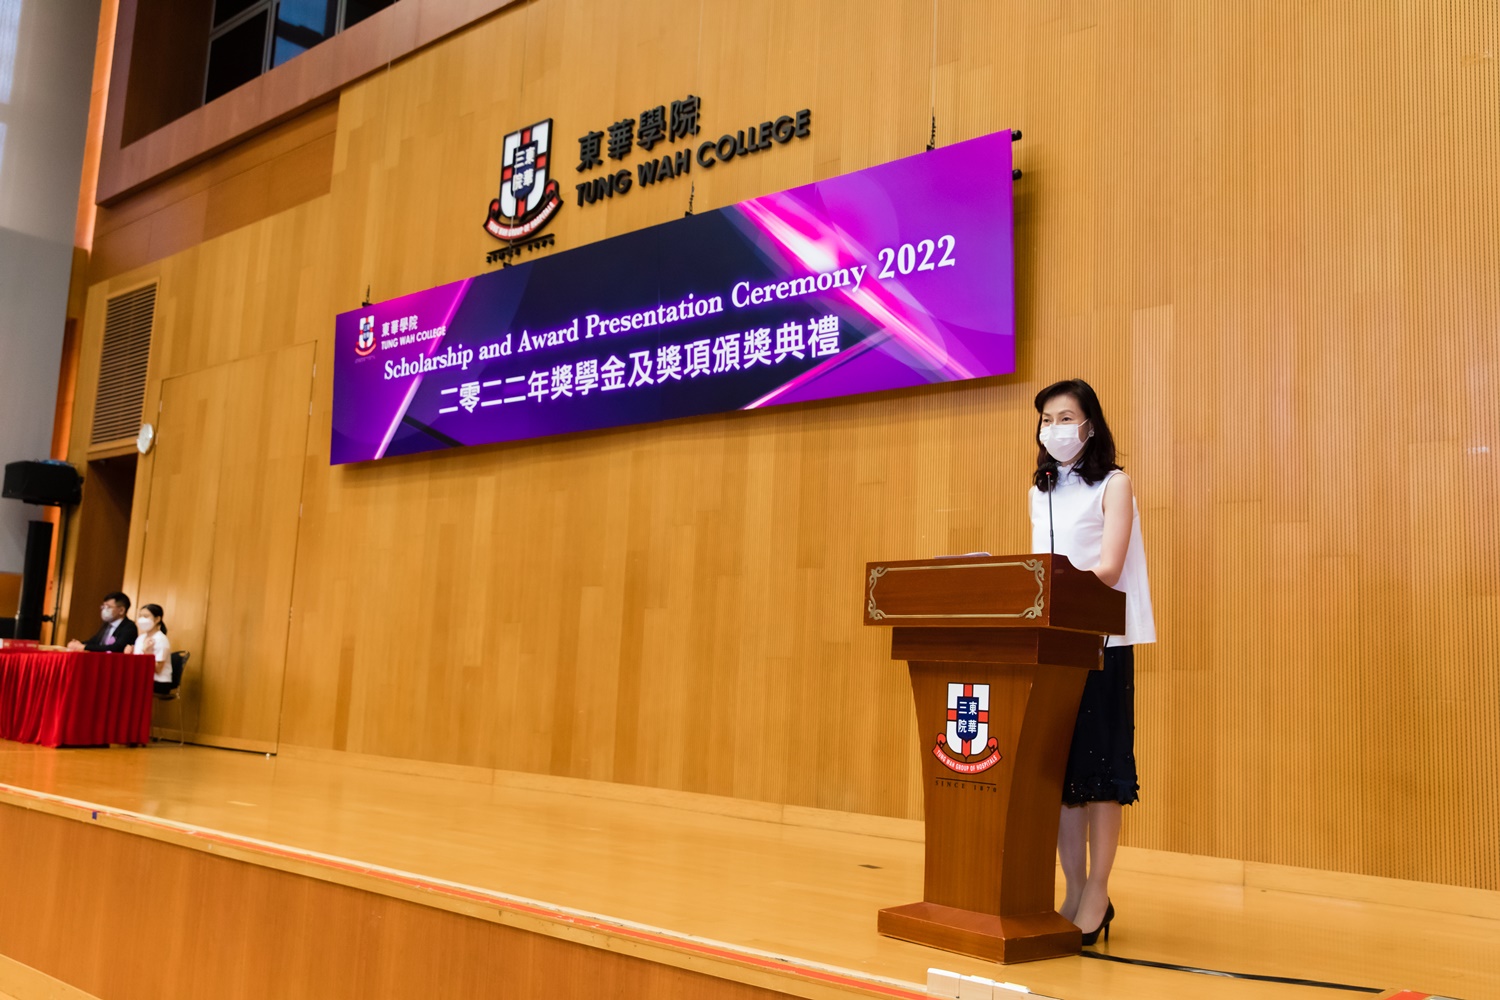 東華學院校務委員會主席陳文綺慧女士, BBS致辭時感謝捐款人的慷慨捐助，對同學的努力予以肯定。